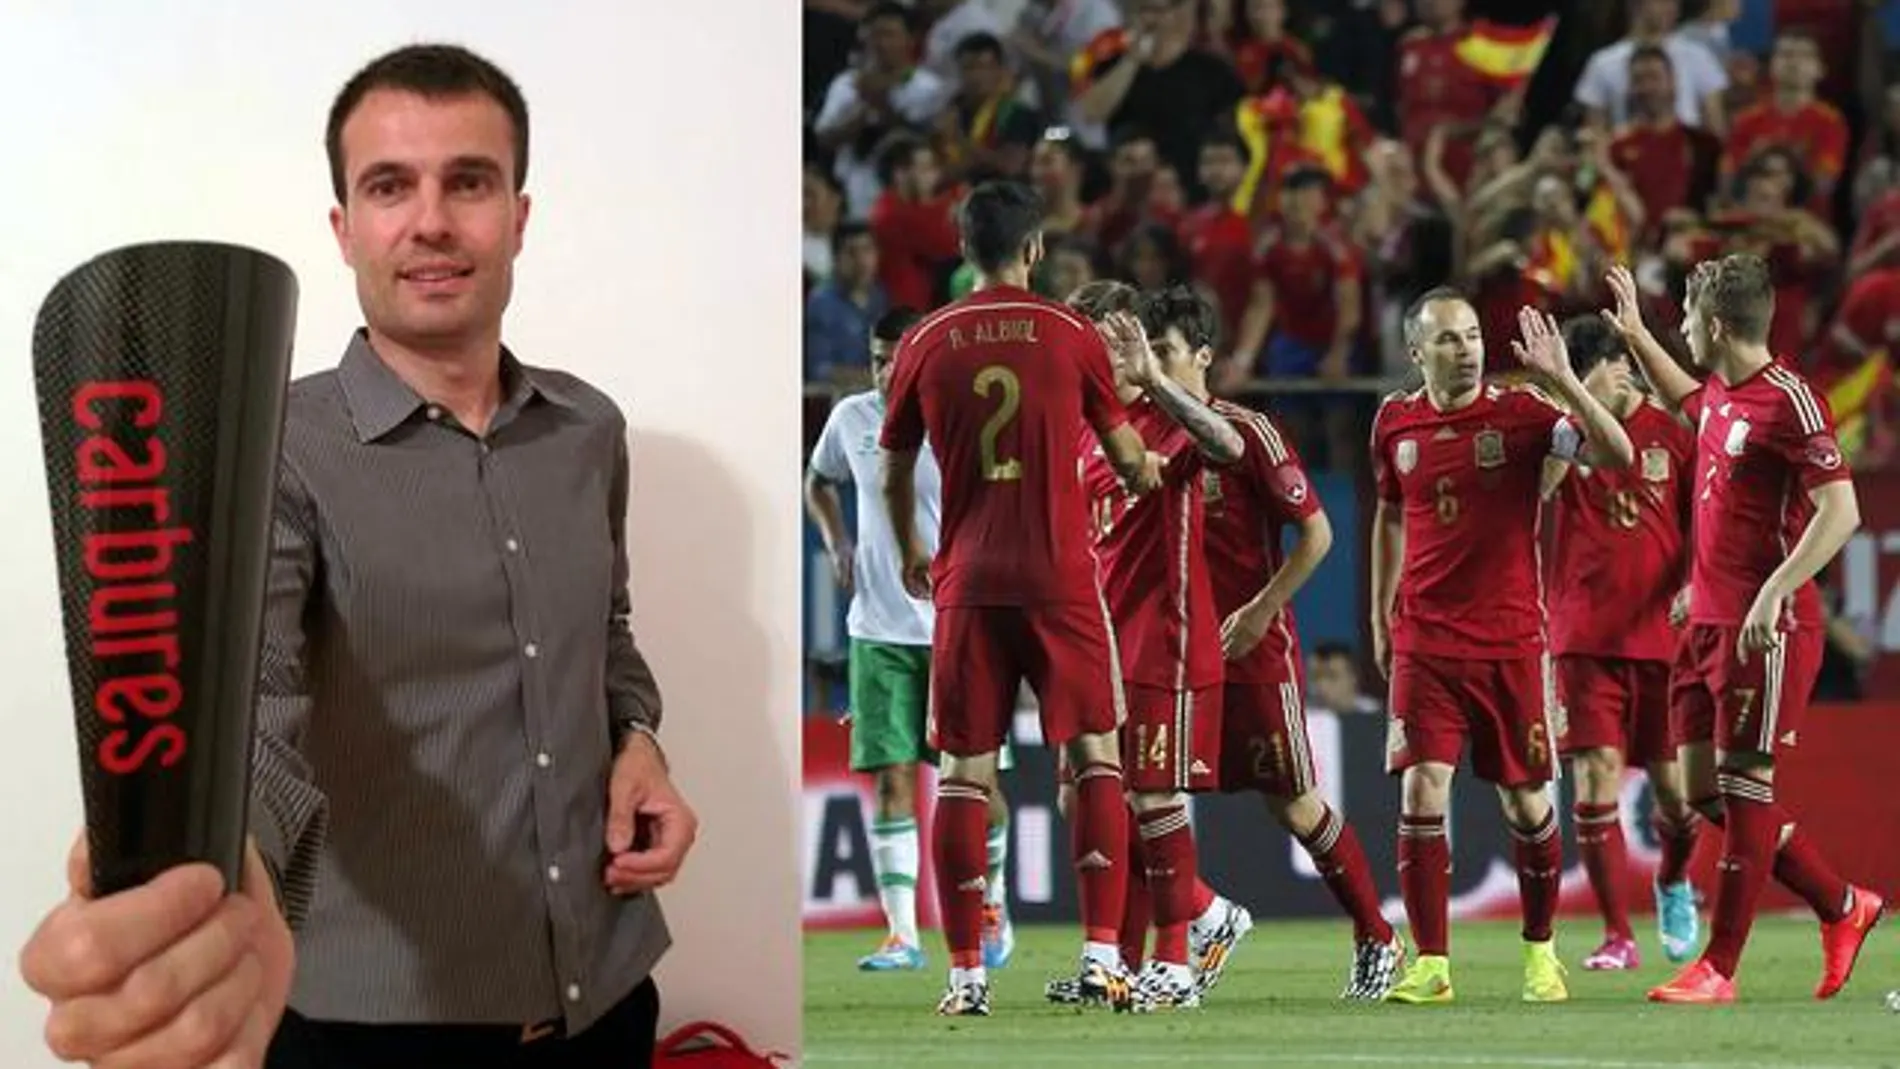 Iván Contreras con la espinillera creada por él, que protegerá las piernas de los jugadores de la selección española en el Mundial de fútbol 2014